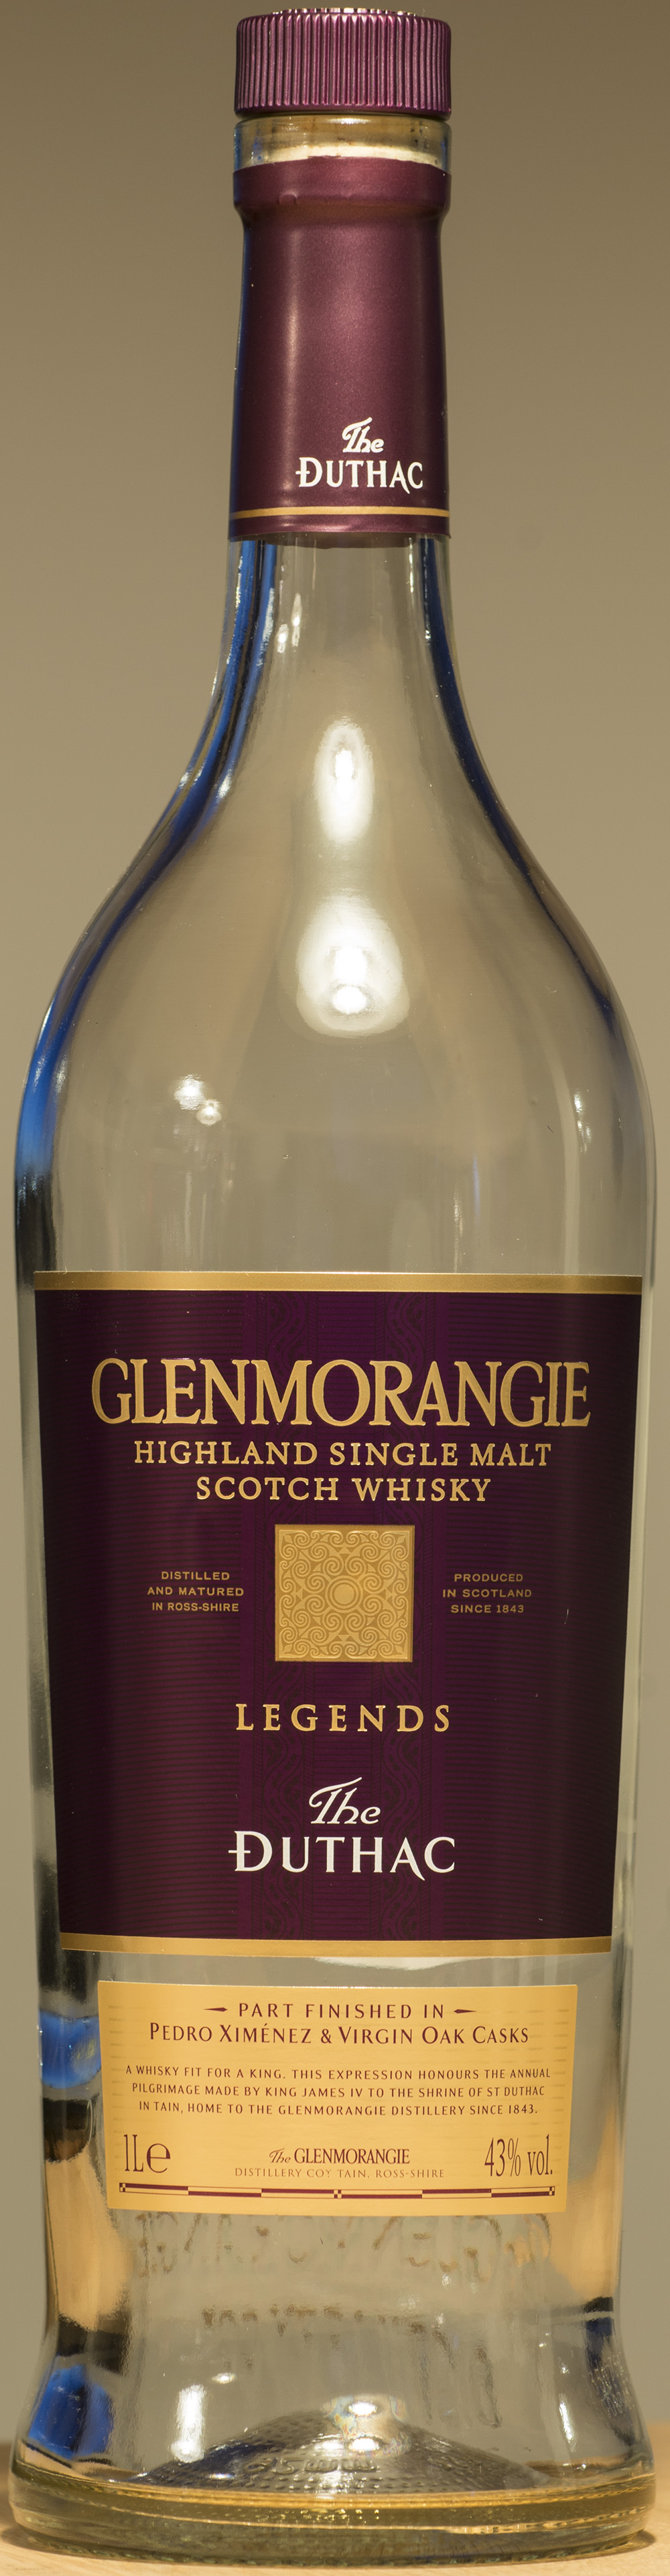 Billede: DSC_9094 - Glenmorangie The Duthac - bottle front.jpg